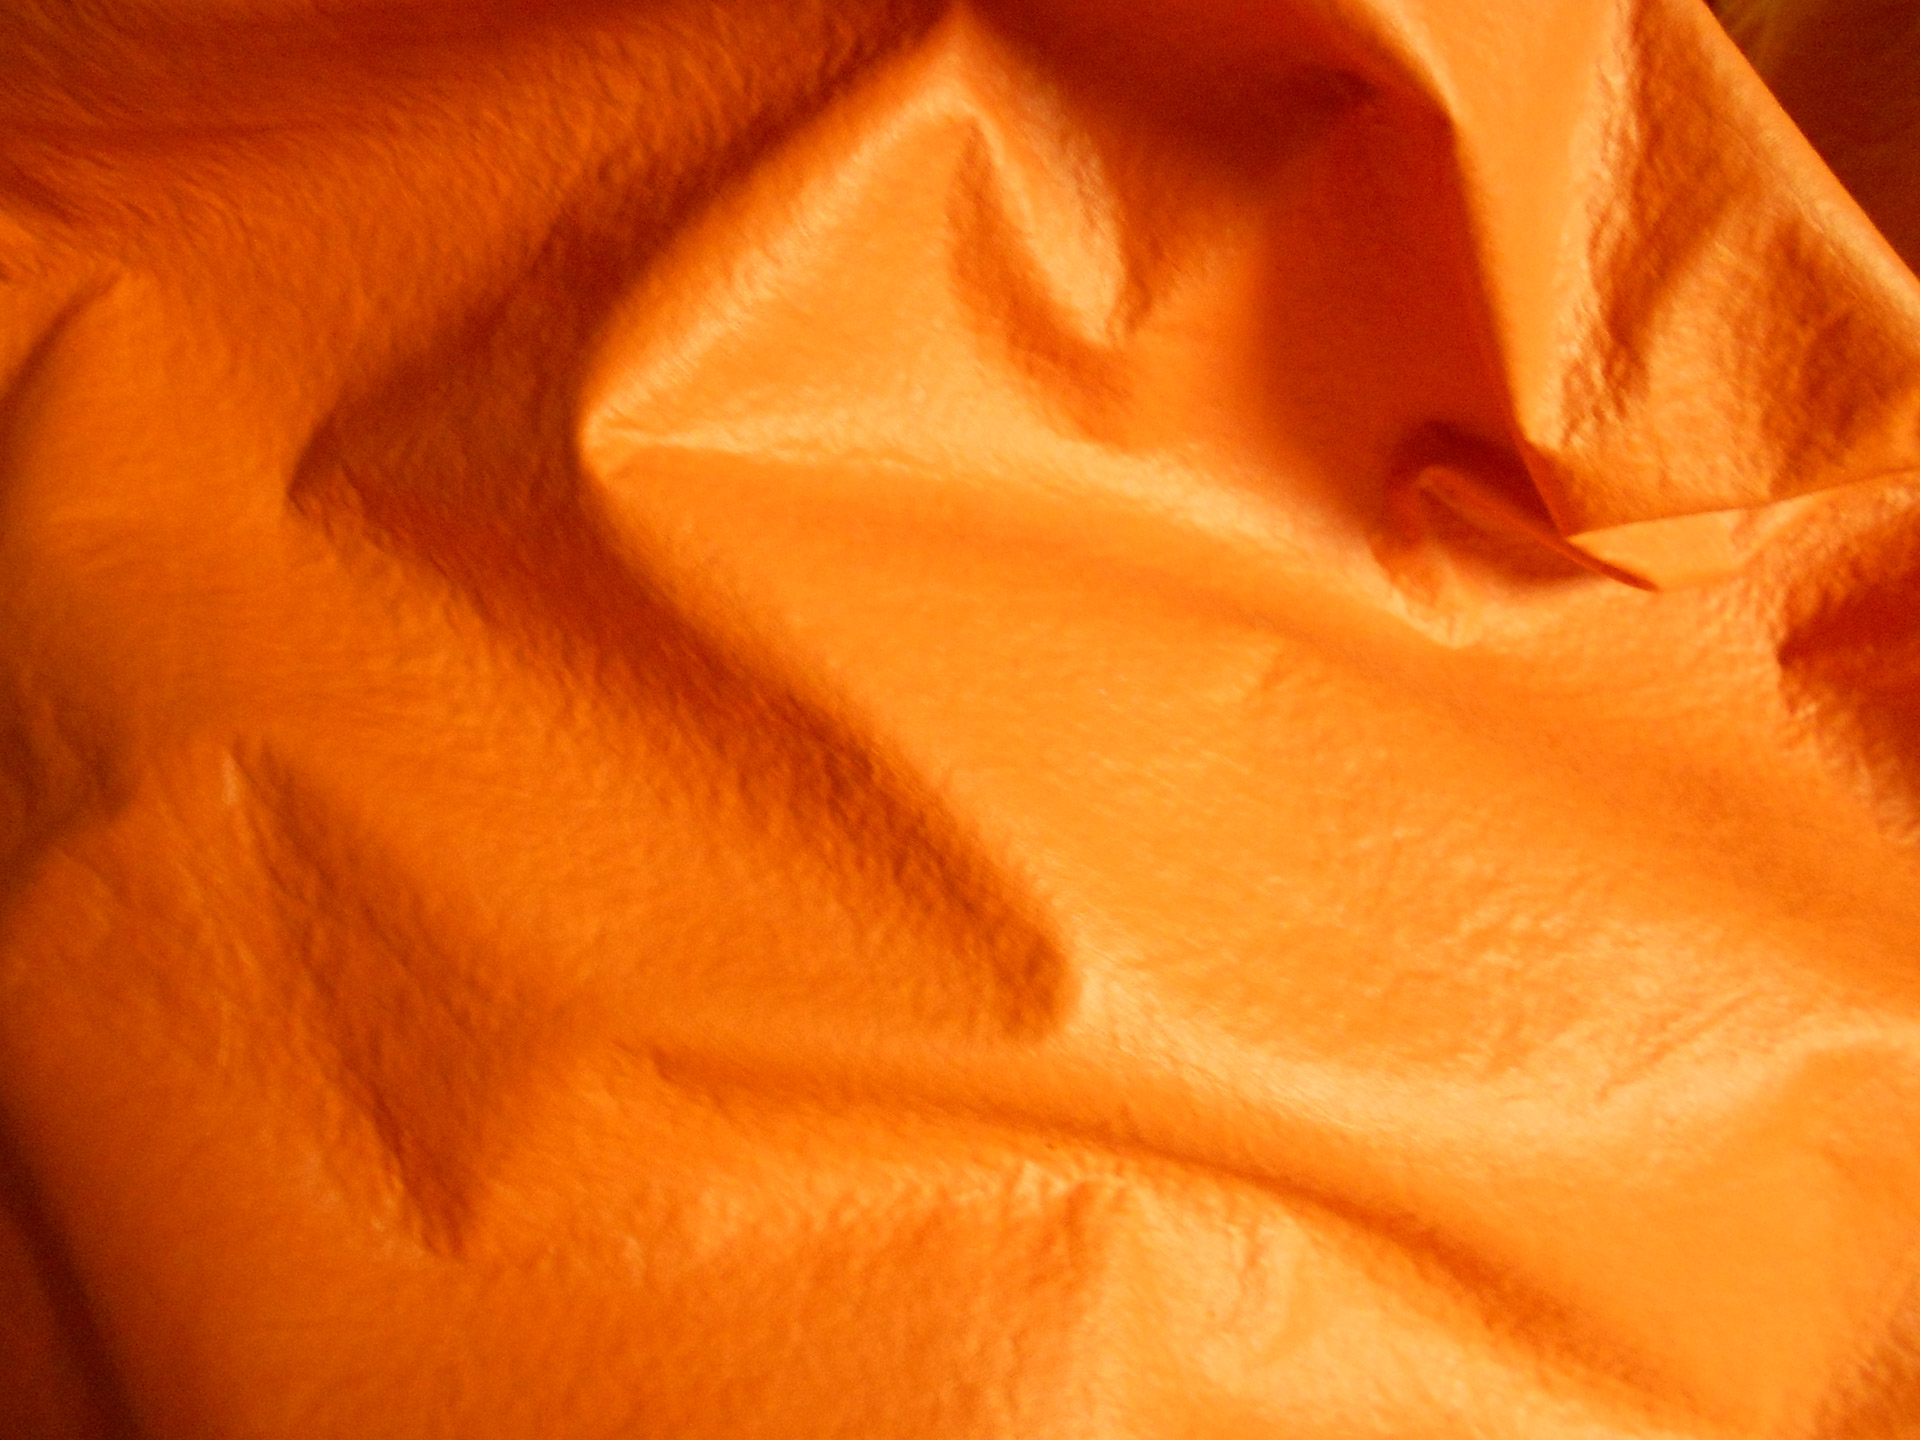 beanbag orange background free photo